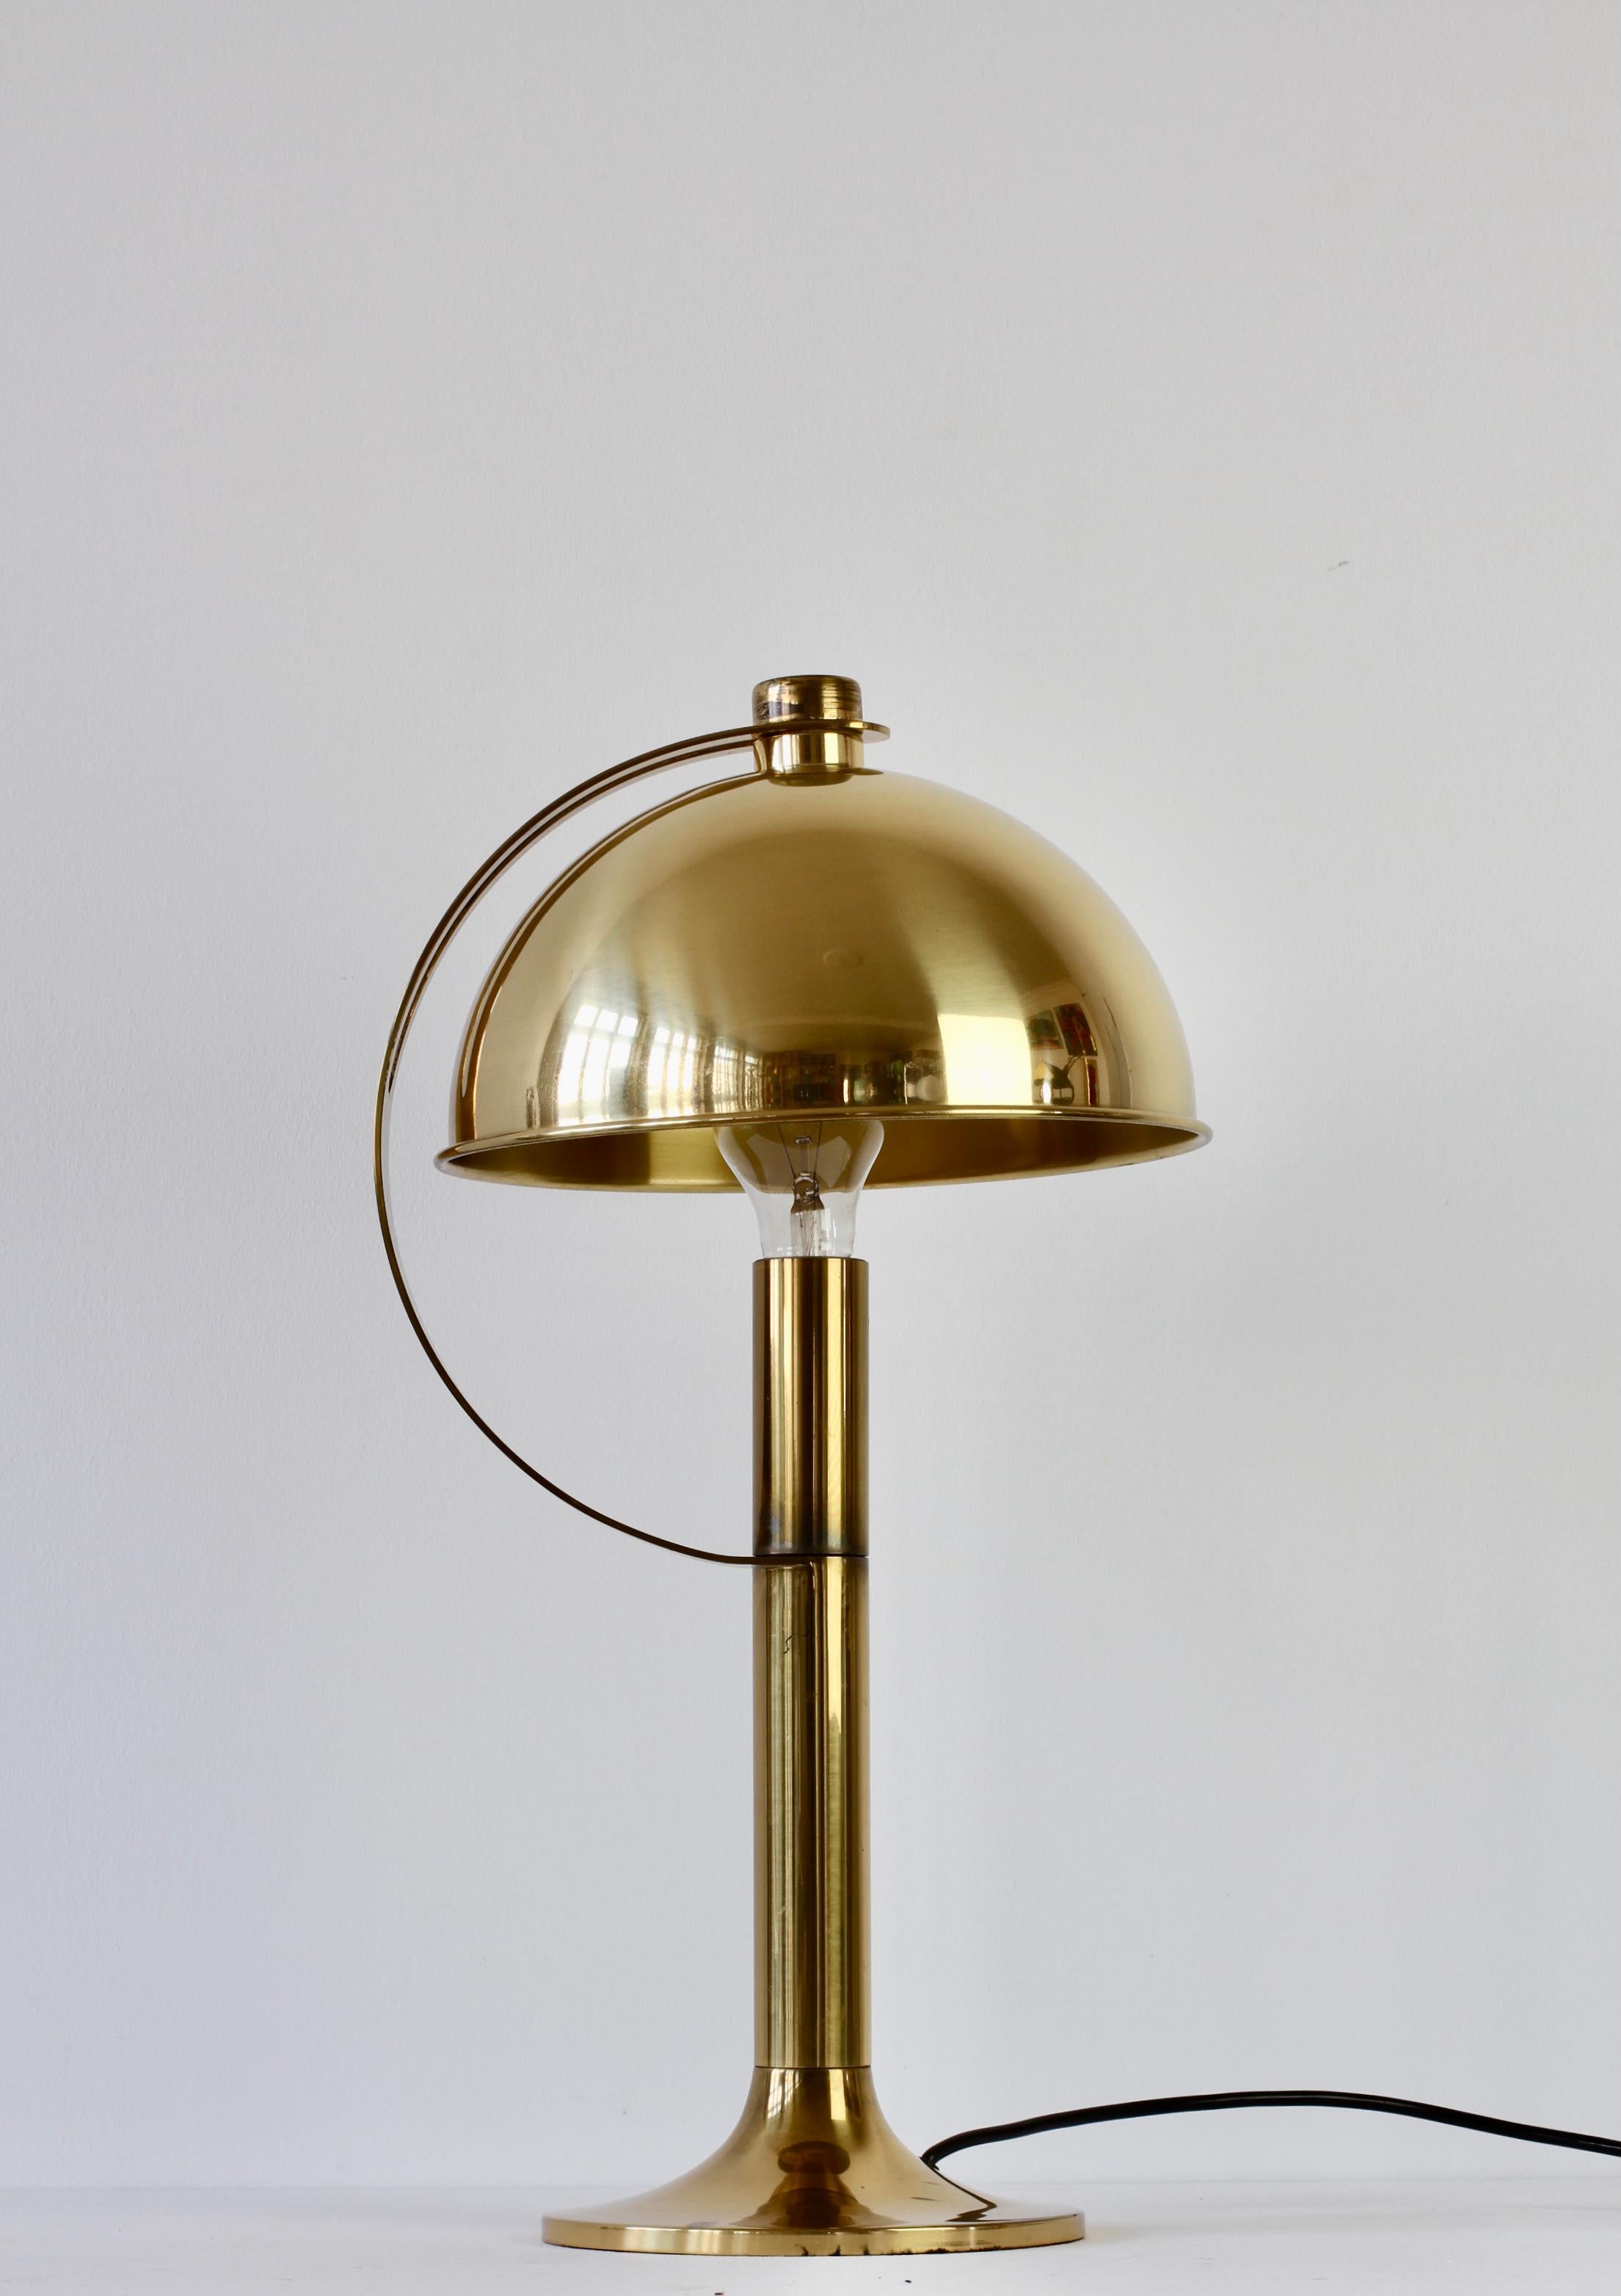 Rare lampe de table ou de bureau de style moderne du milieu du siècle, fabriquée en Allemagne par Florian Schulz vers les années 1970. La quincaillerie en laiton poli (avec une patine liée à l'âge) et l'abat-jour rond réglable en laiton en font la